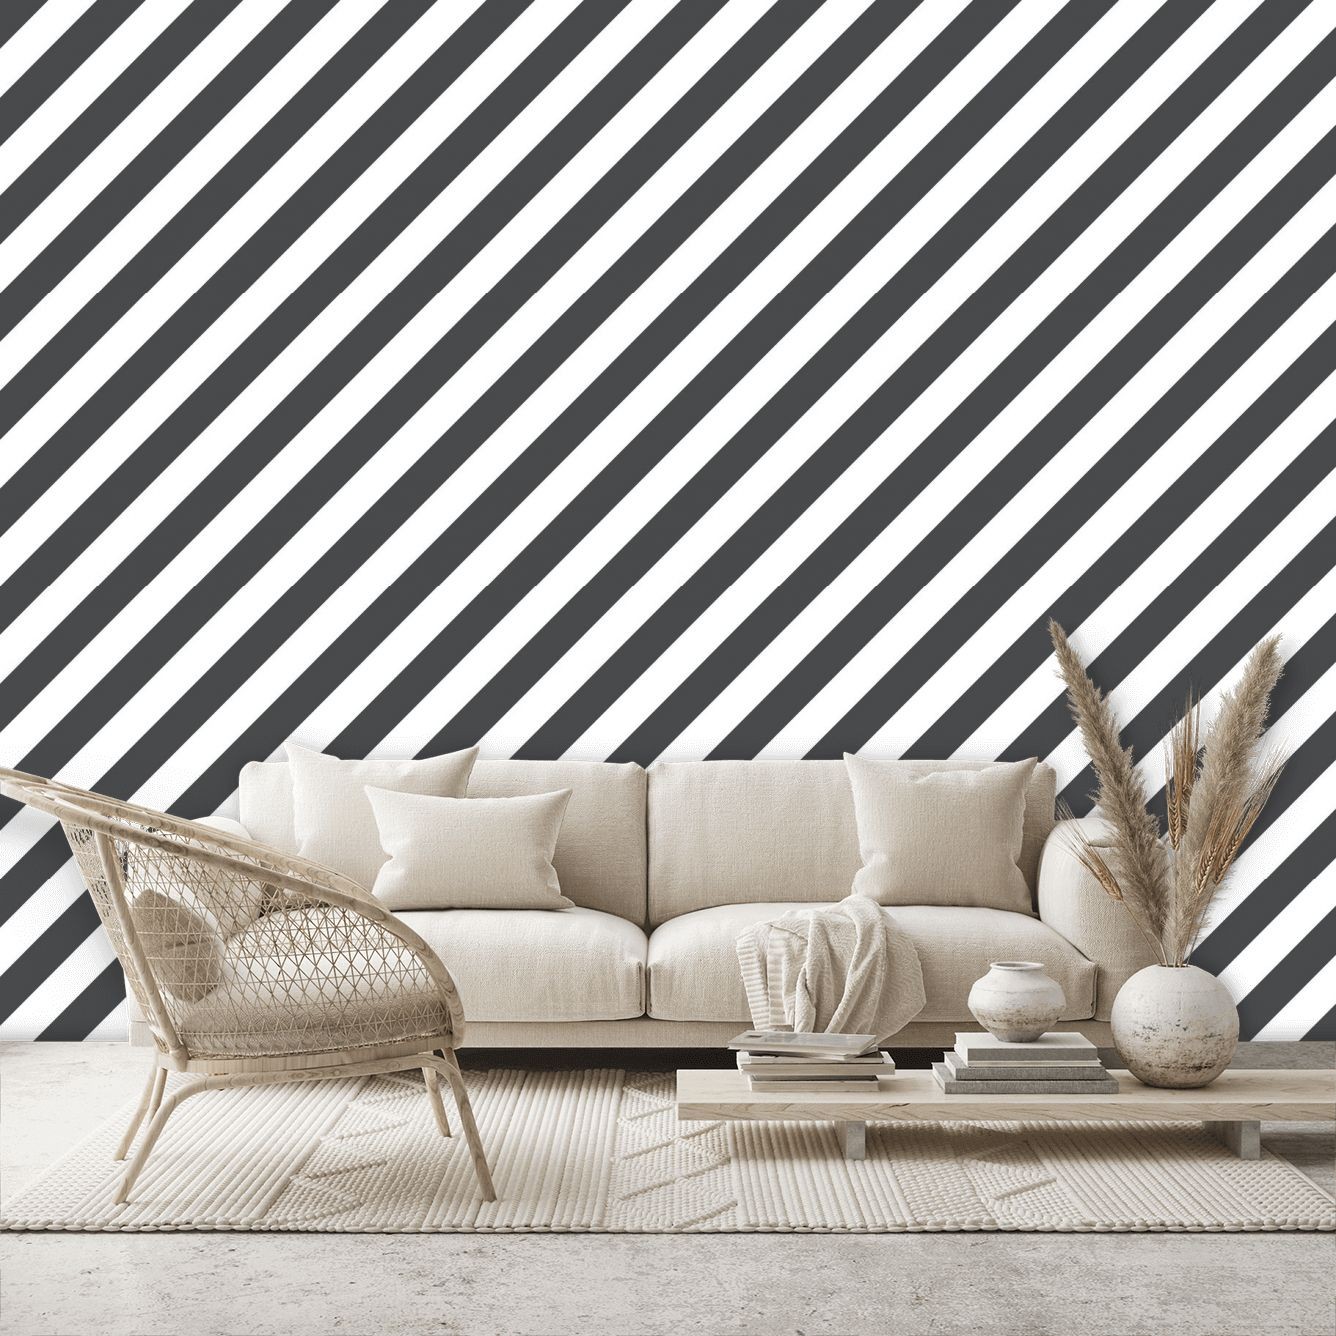 ST36918 Diagonal Stripe Wallpaper